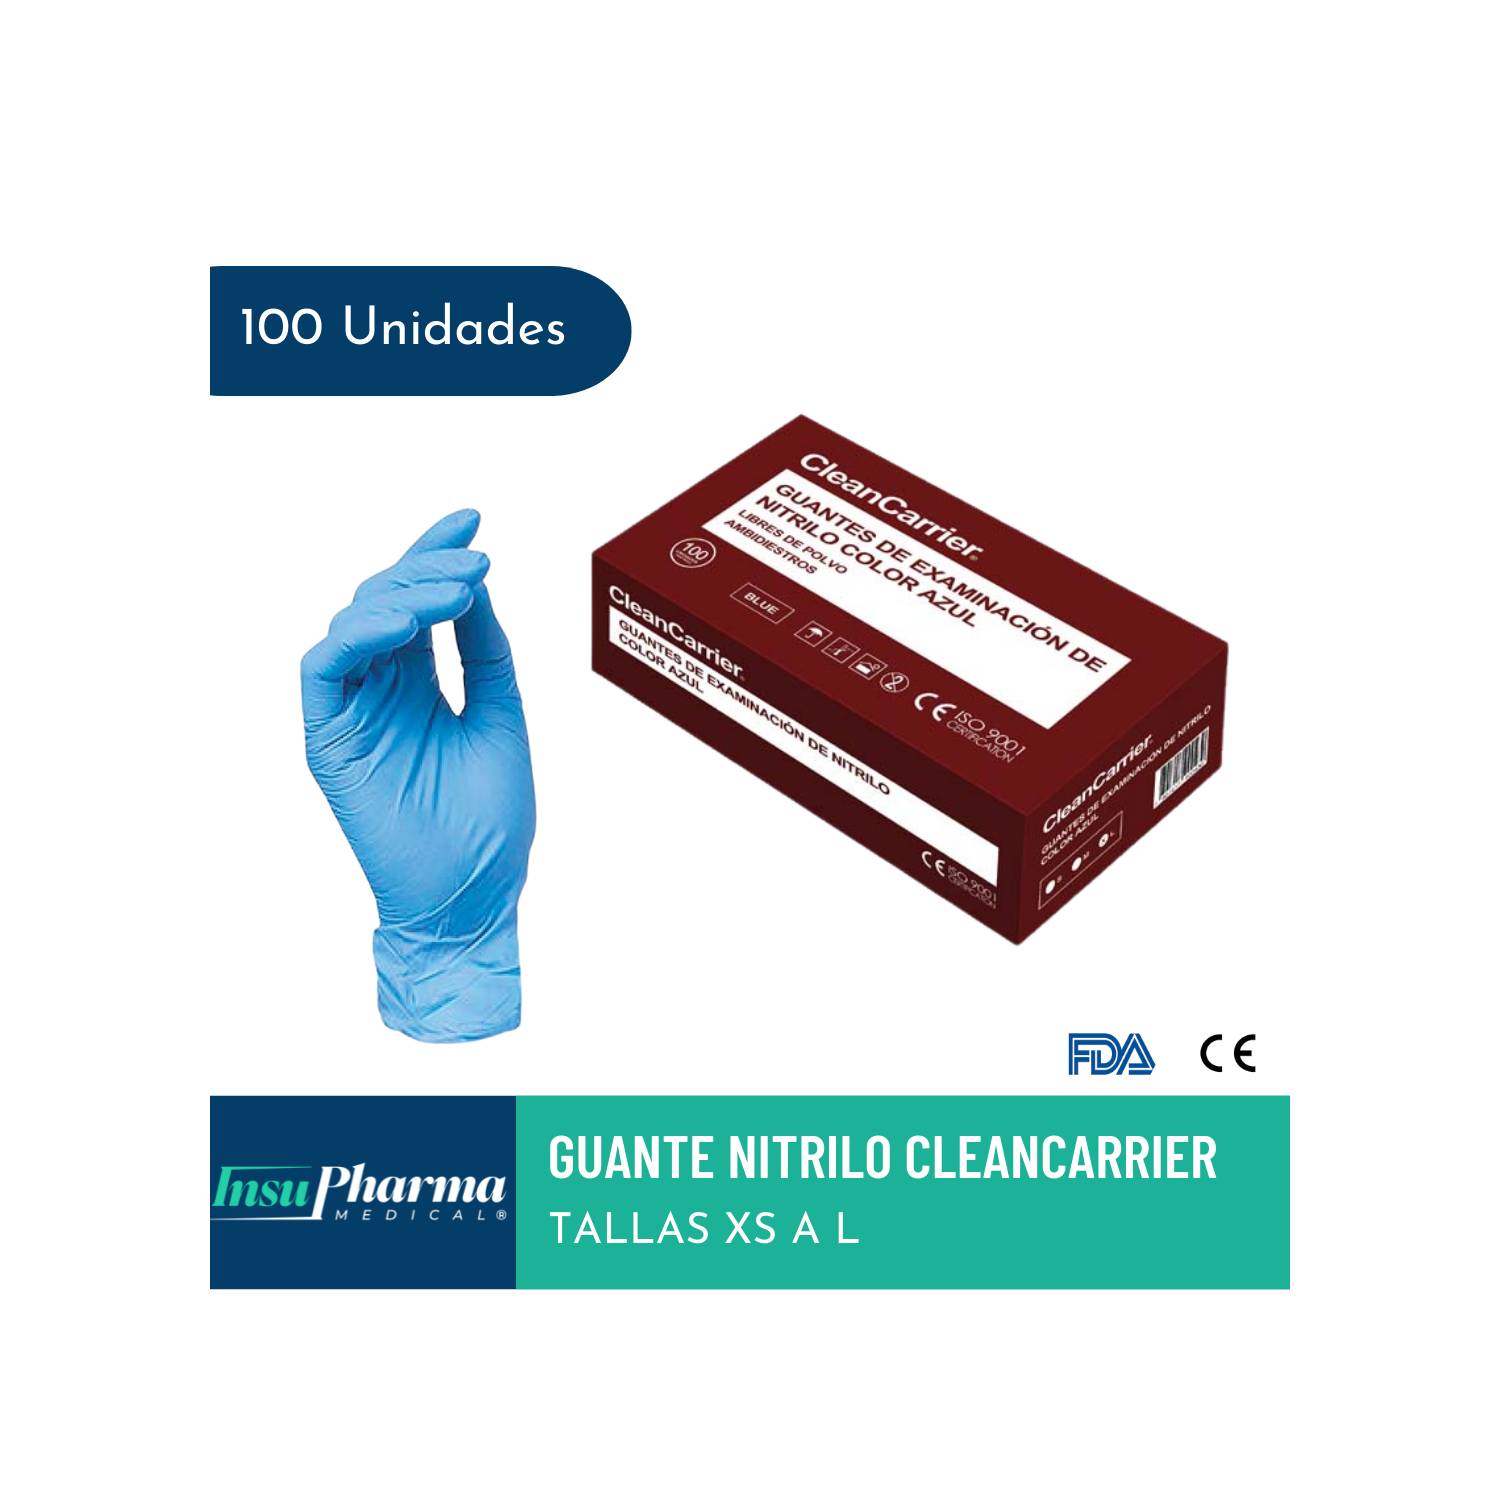 Guante vinilo azul sin polvo CleanCarier caja 100 unidades L